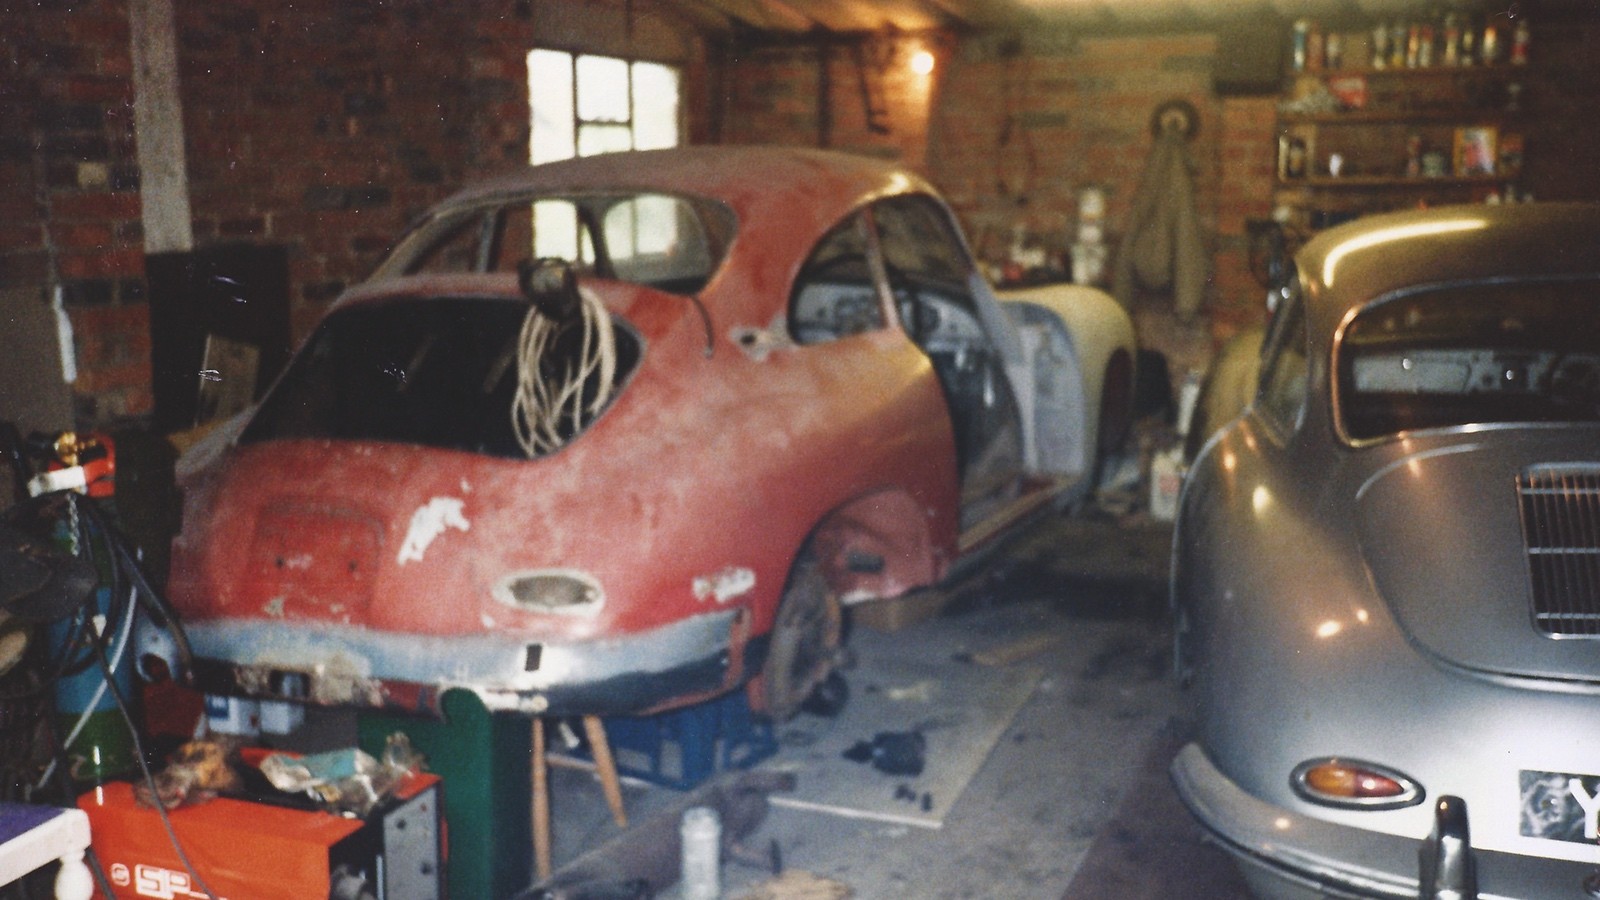 These forgotten Porsches were all found in barns